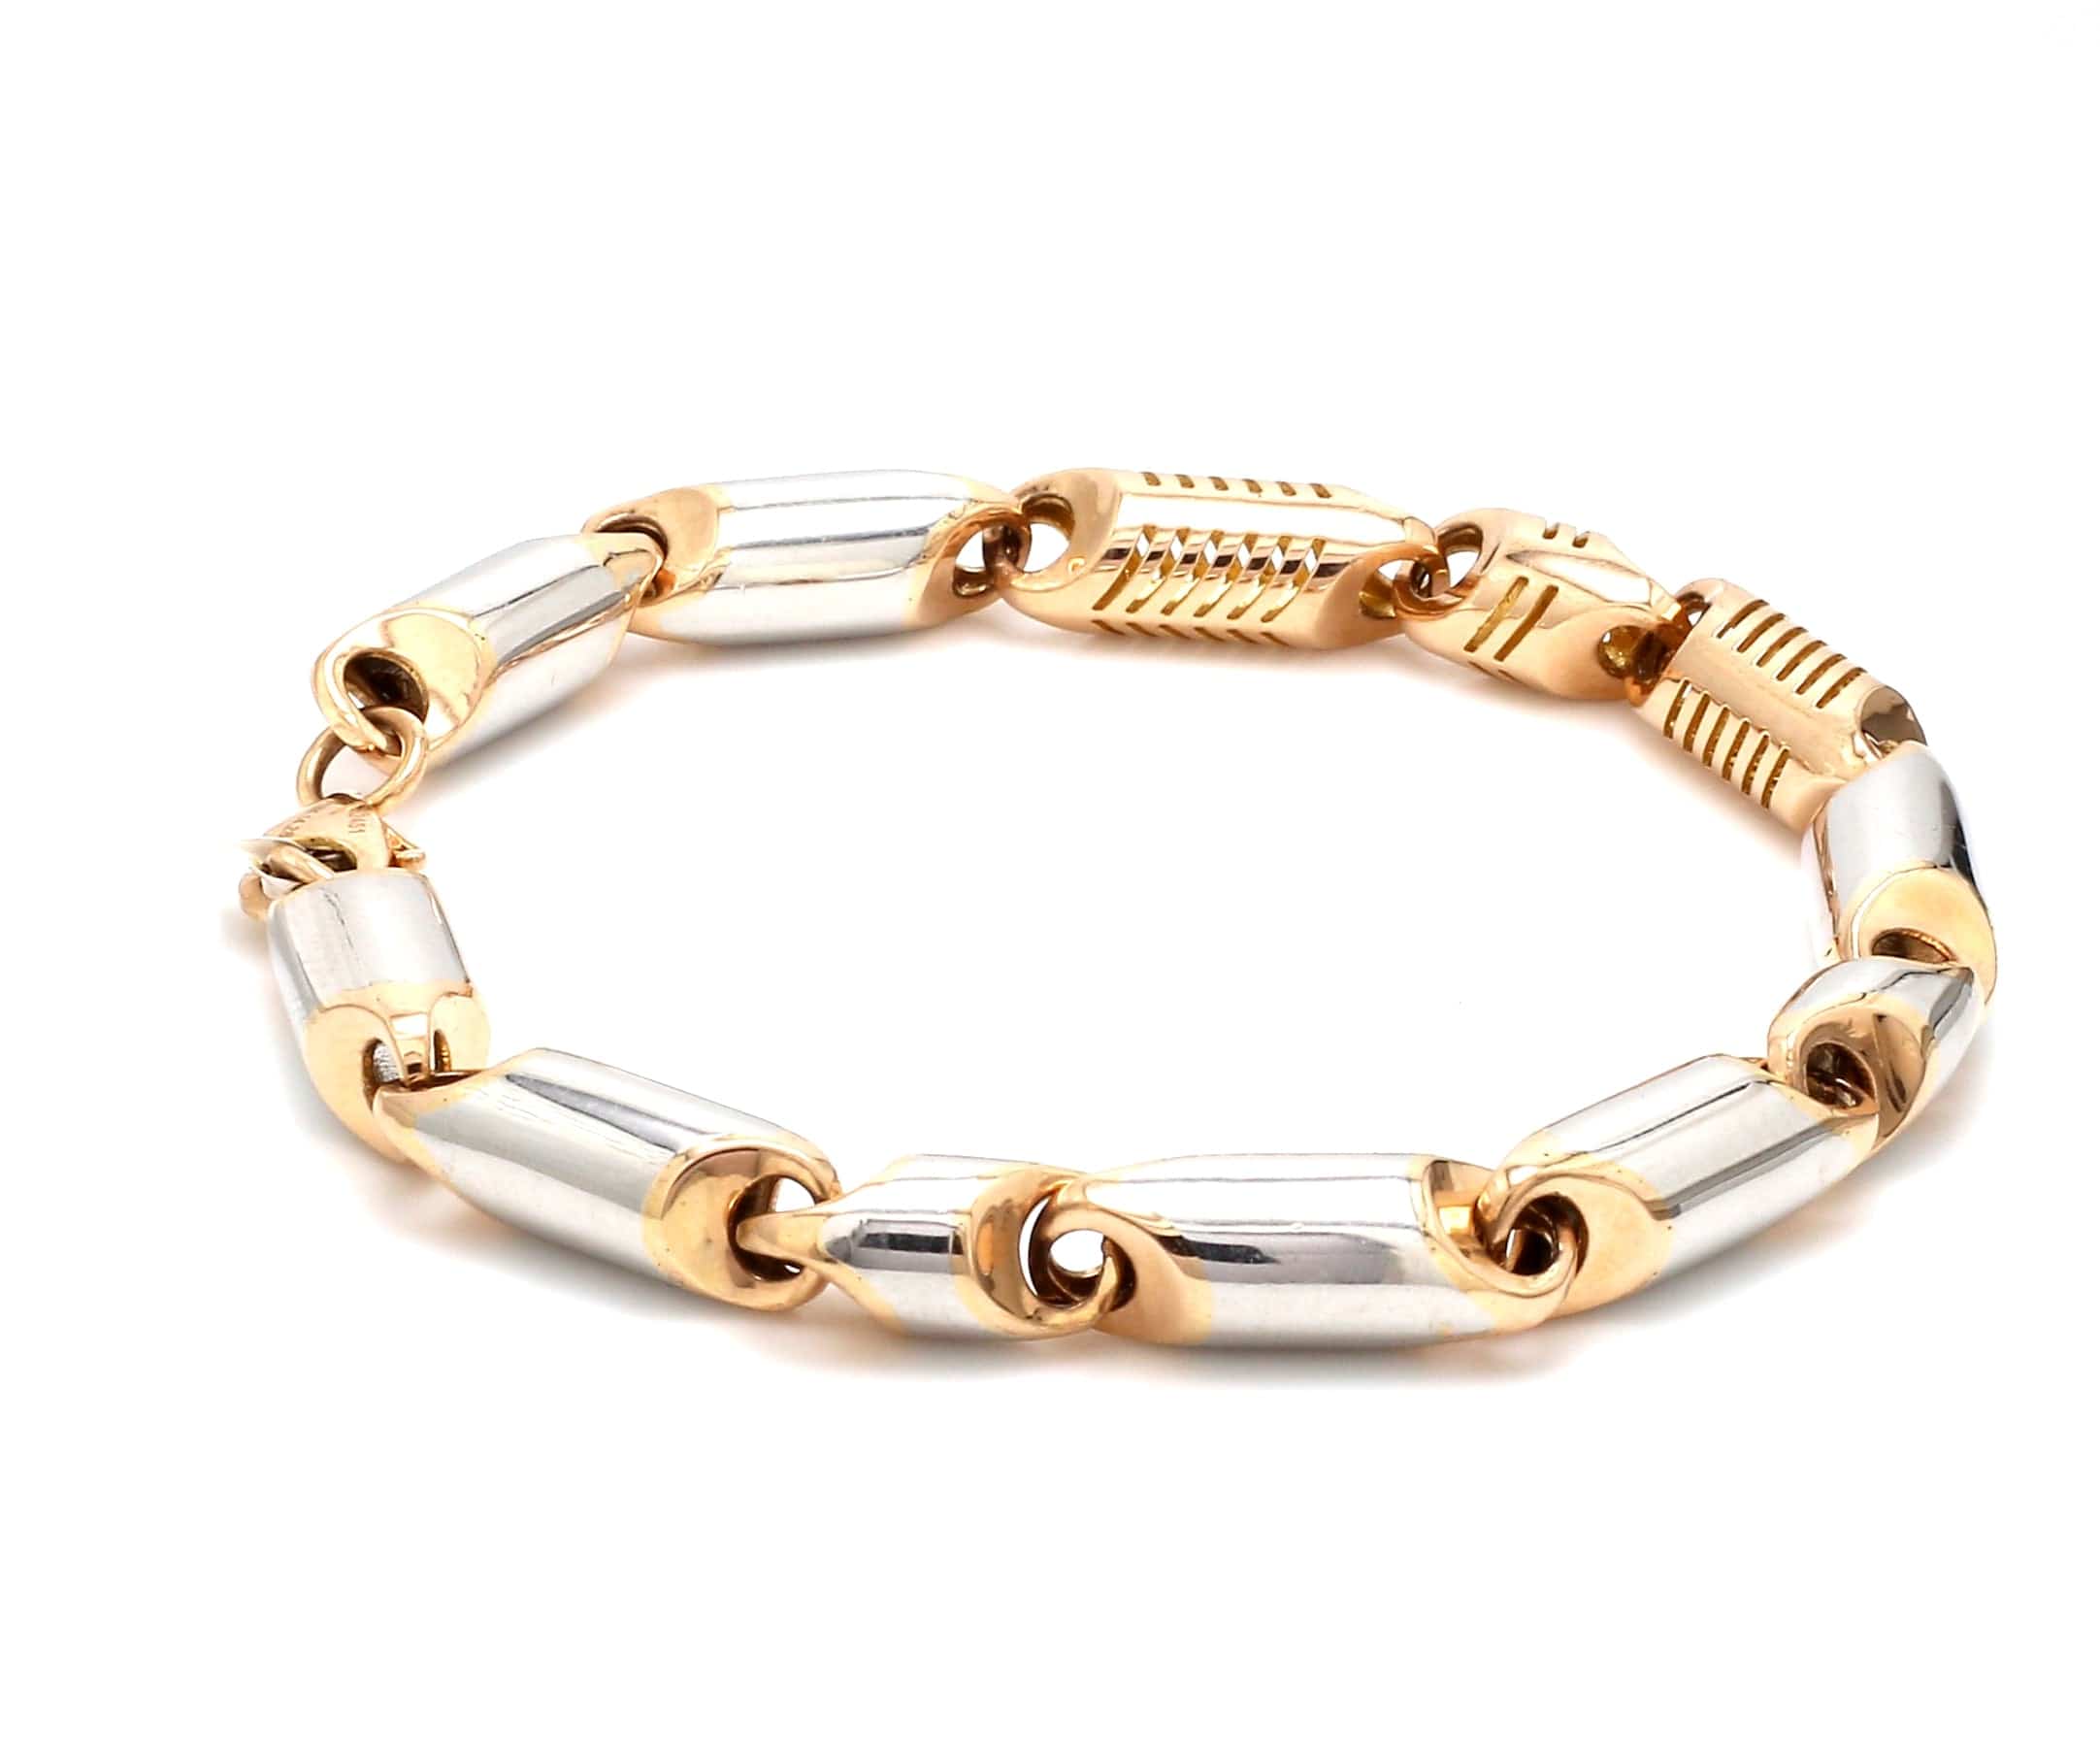 Gold and diamond bracelets